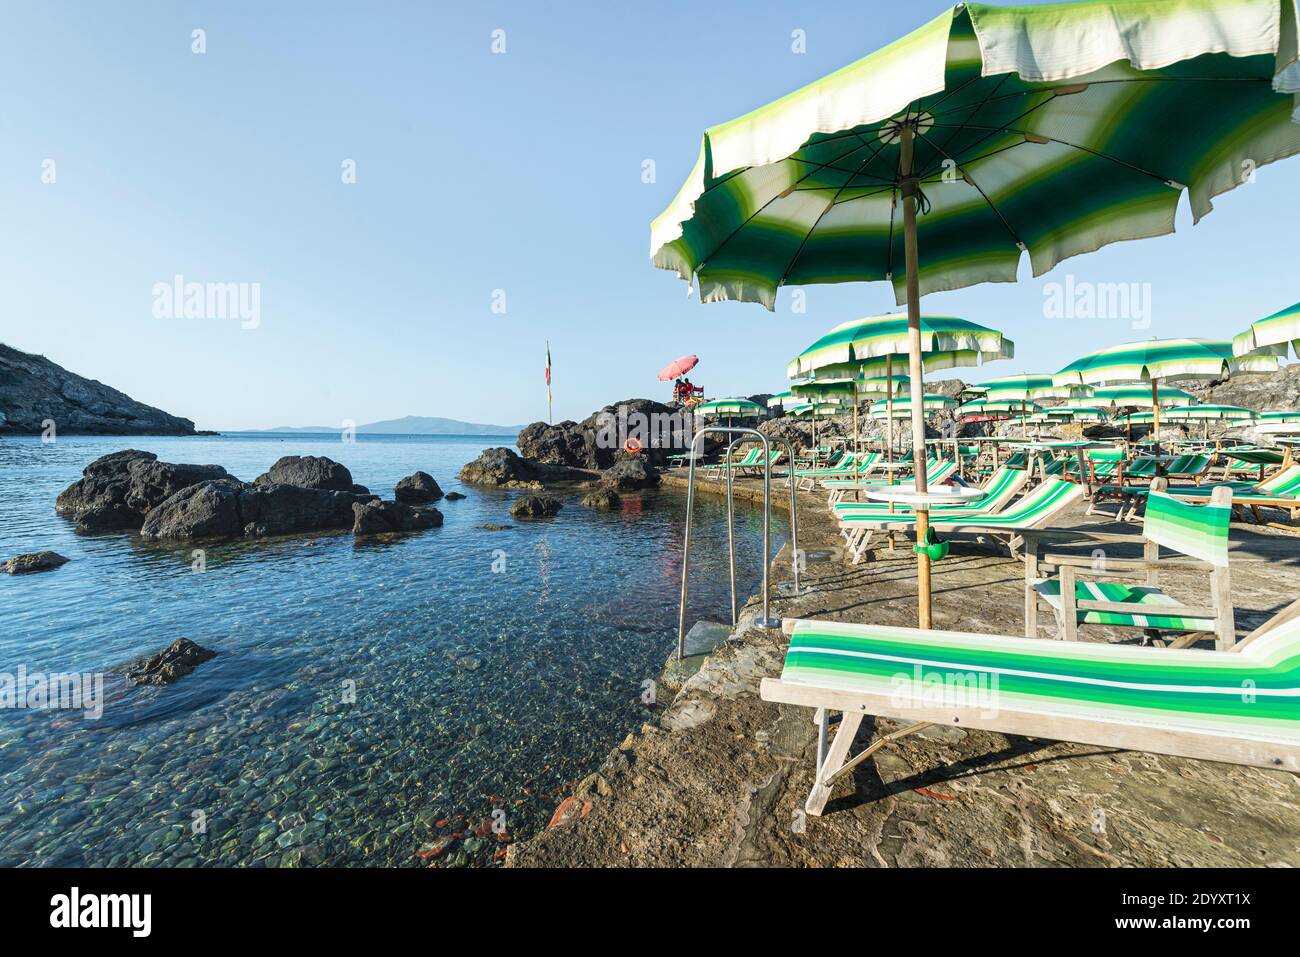 Sedie a sdraio e ombrelloni colorati presso la zona balneare mundane bagno  delle Donne, sulla costa rocciosa di Talamone, Maremma, Toscana, Italia  Foto stock - Alamy